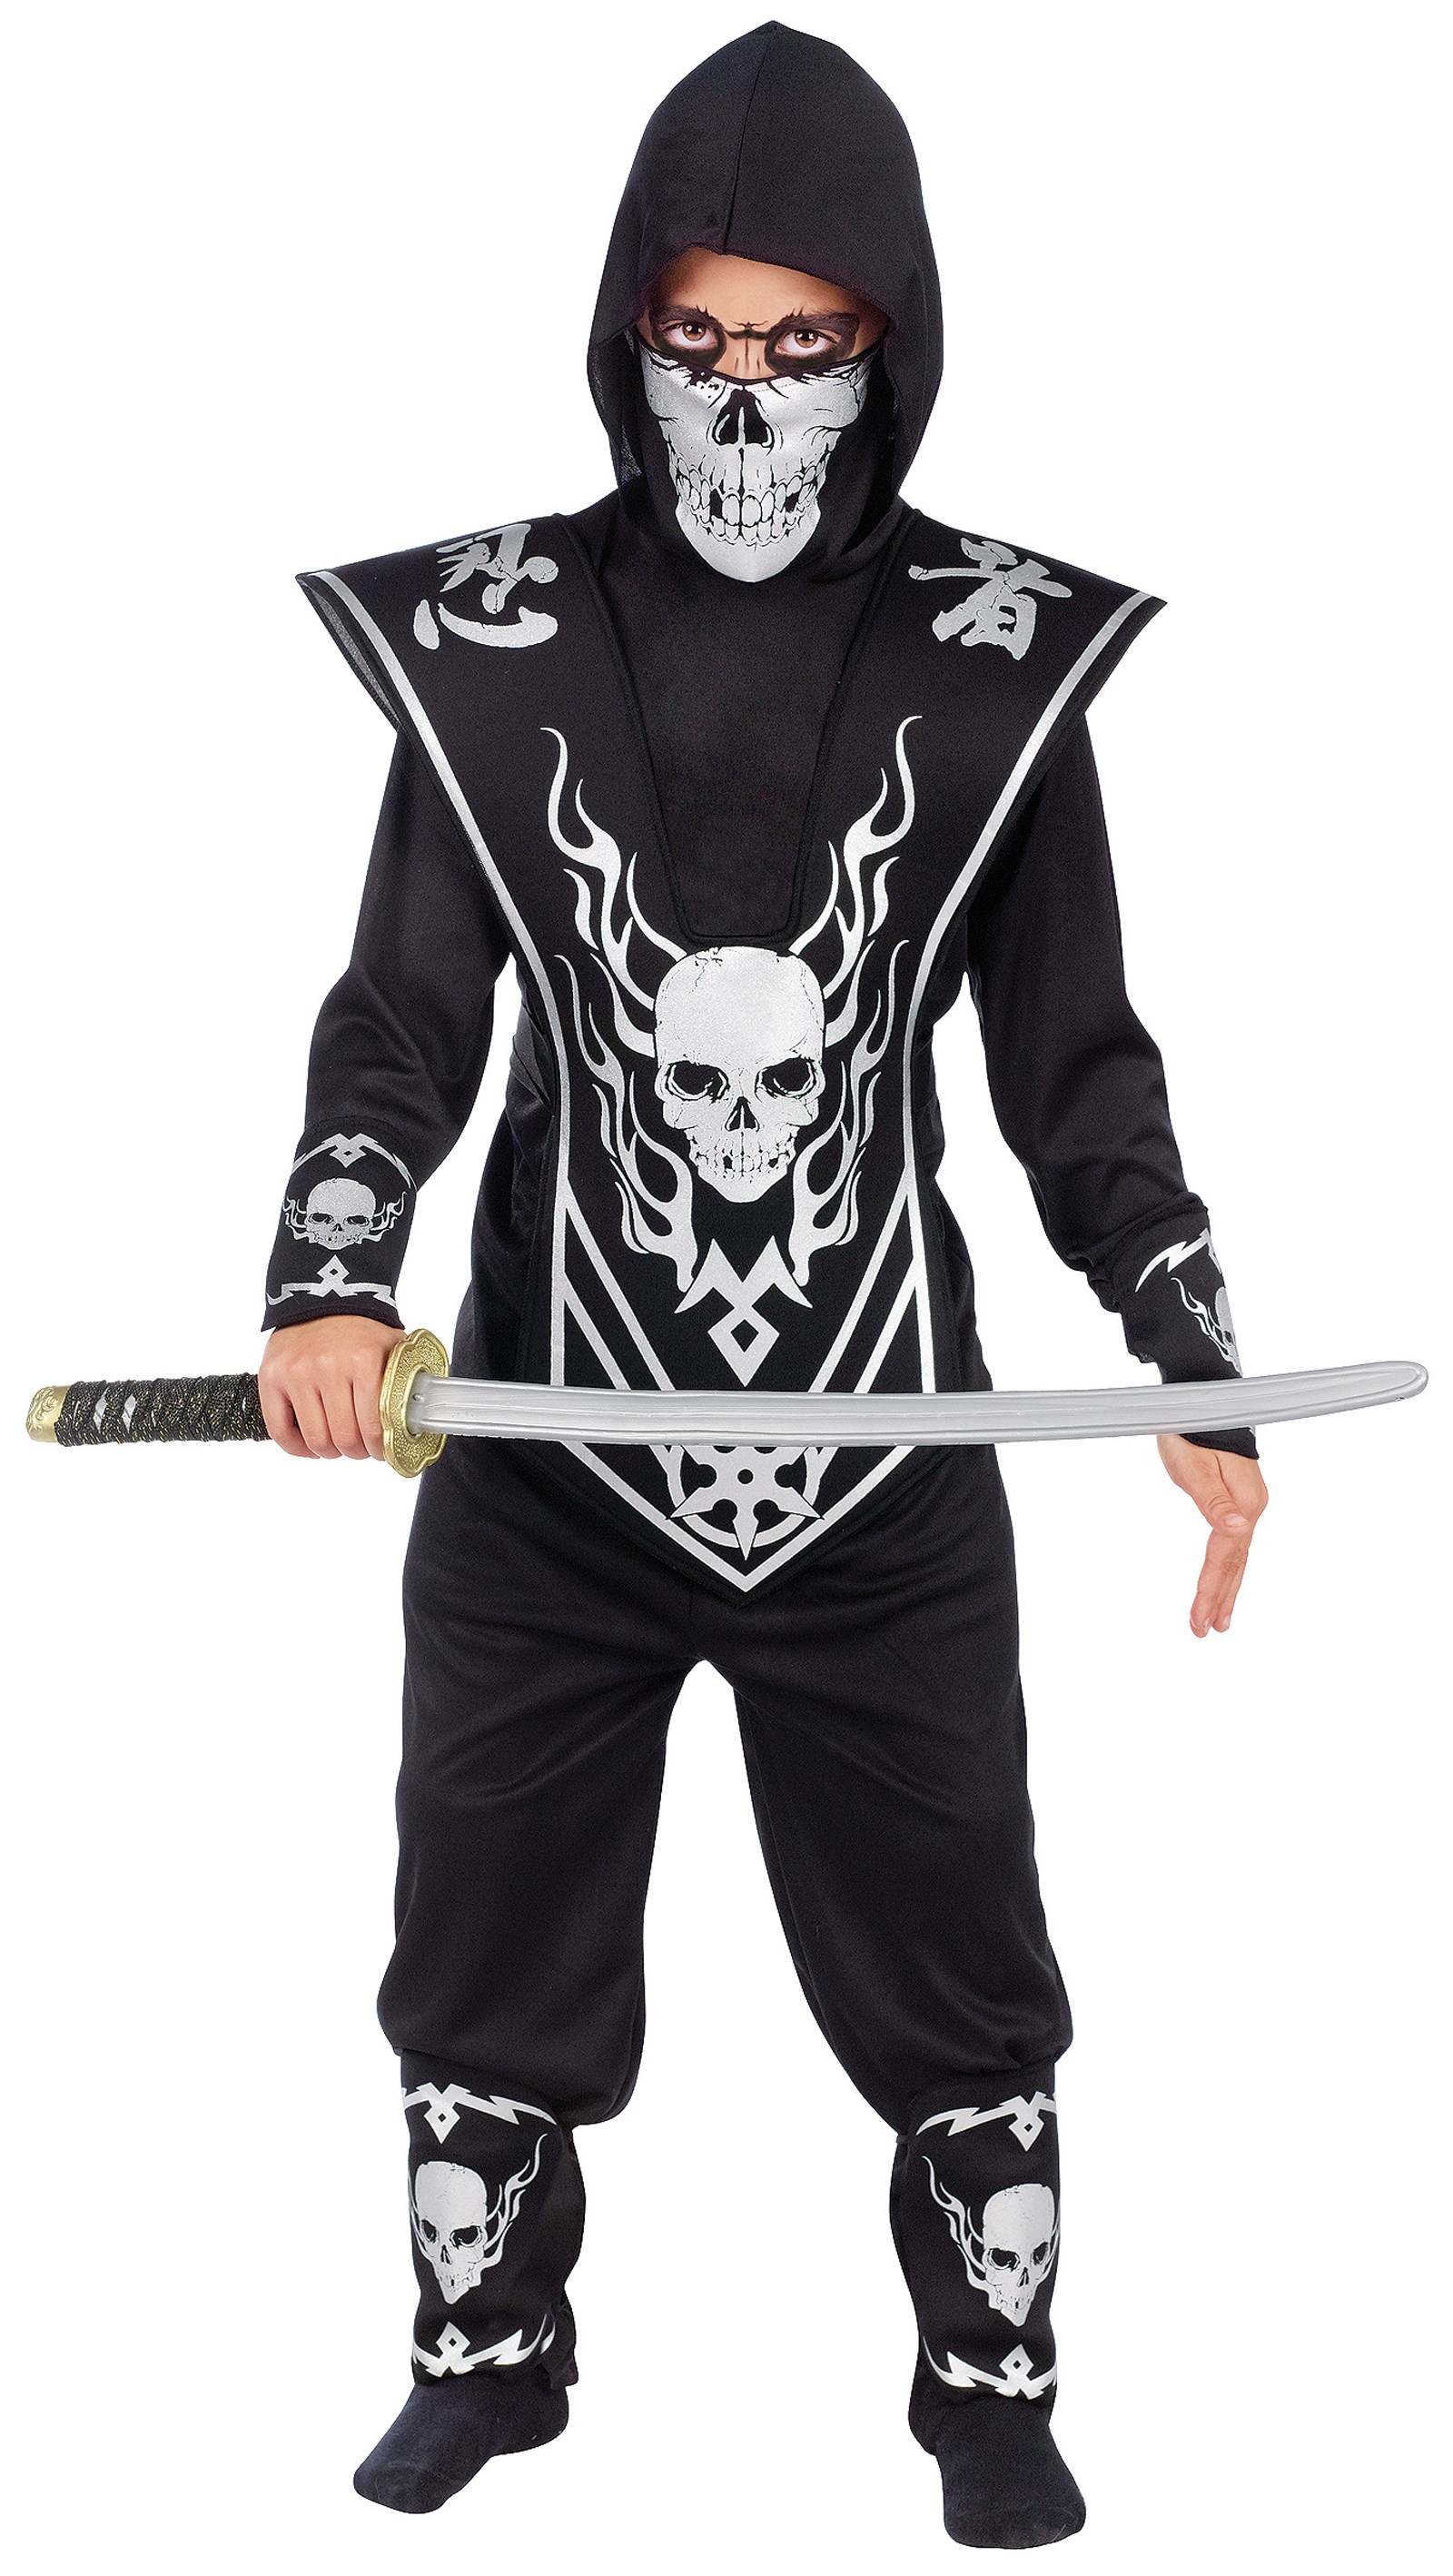 Skull Lord Ninja Child Costume